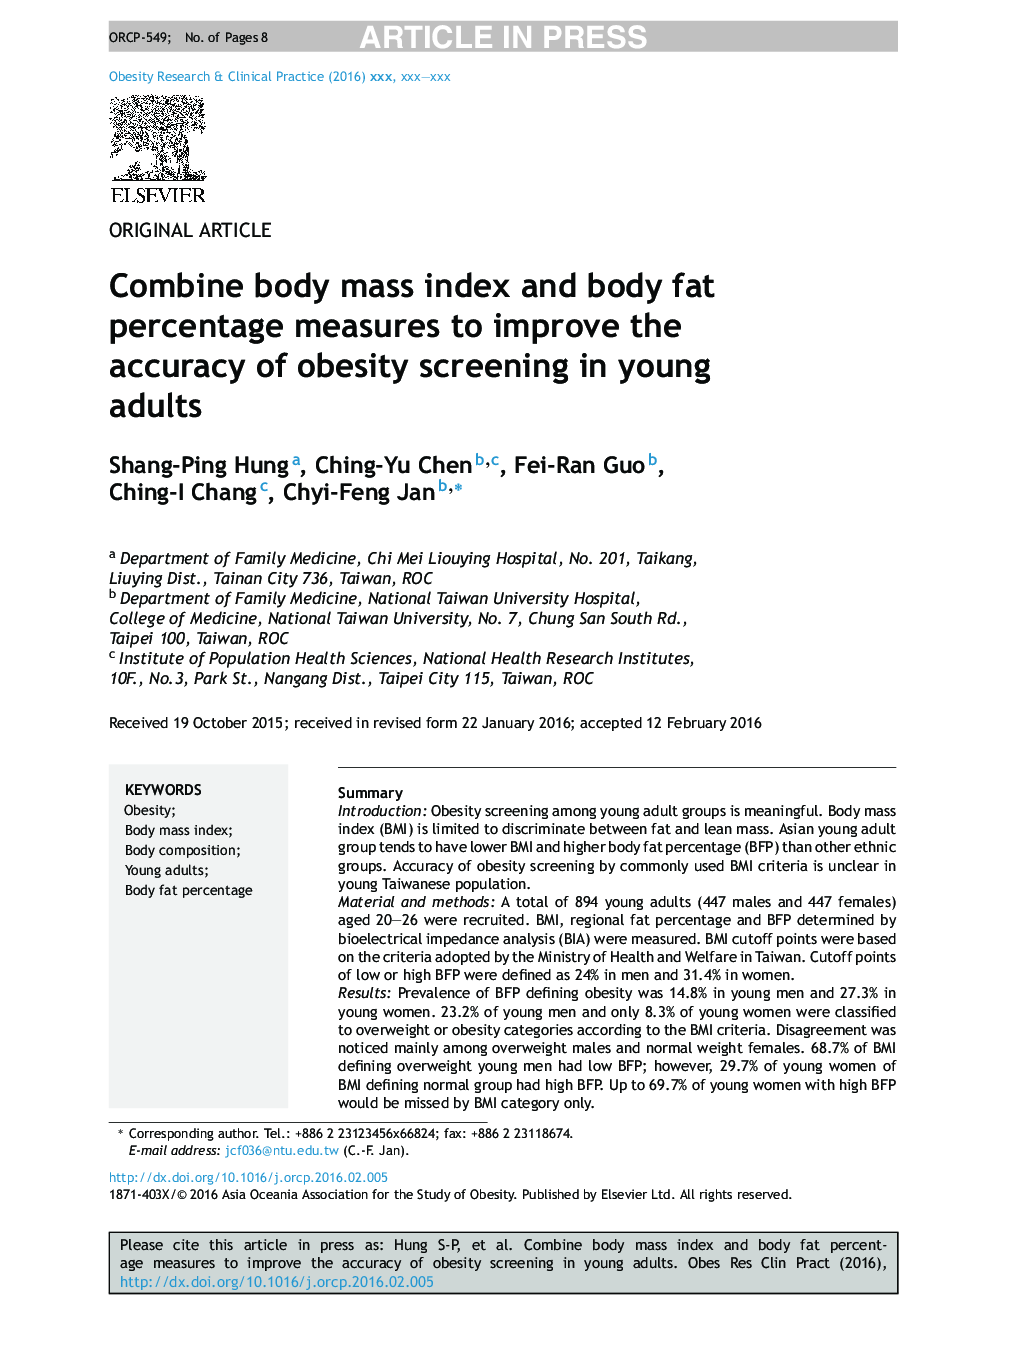 ترکیبی از شاخص توده بدن و درصد چربی بدن برای بهبود دقت غربالگری چاقی در بزرگسالان جوان است 